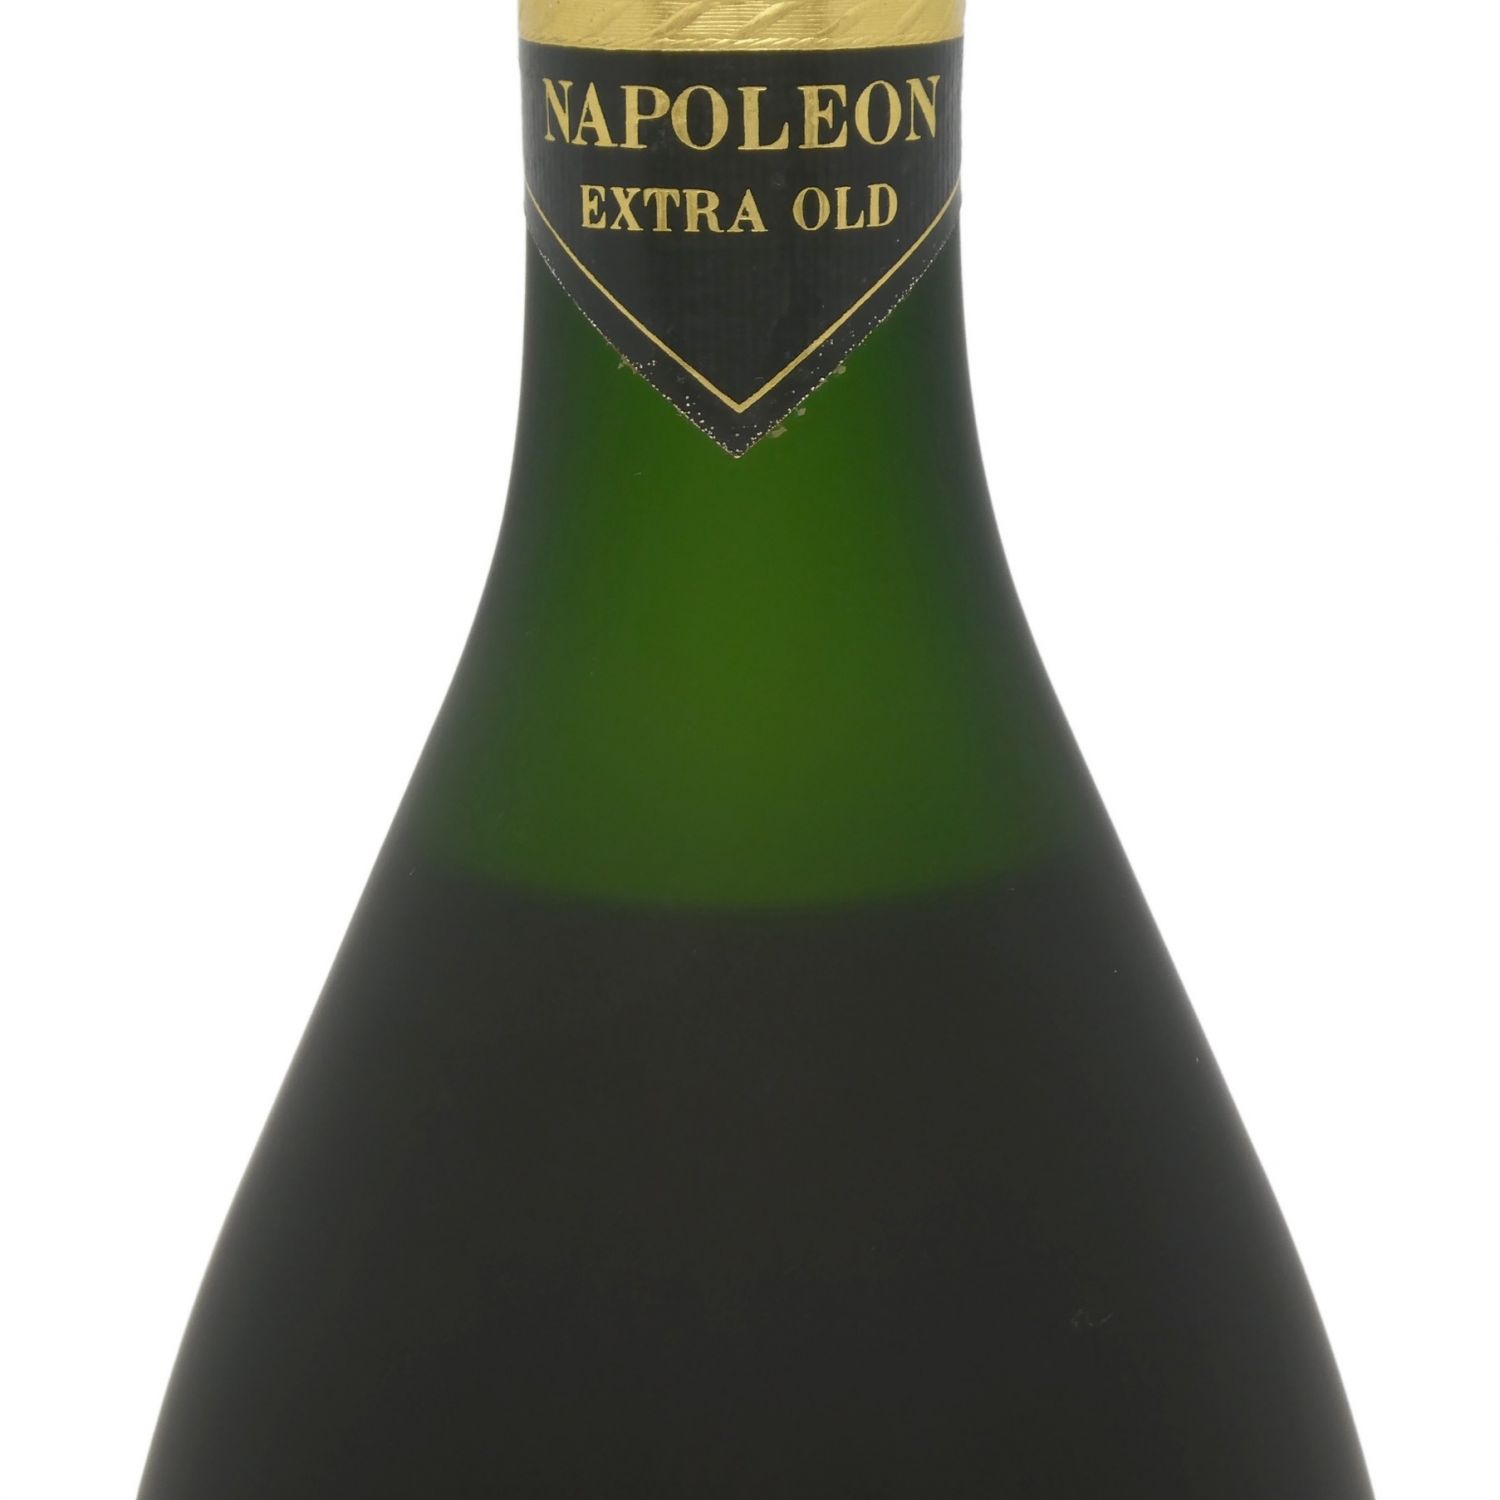 REMY MARTIN (レミーマルタン) NAPOLEON EXTRA OLD Fine Champagne